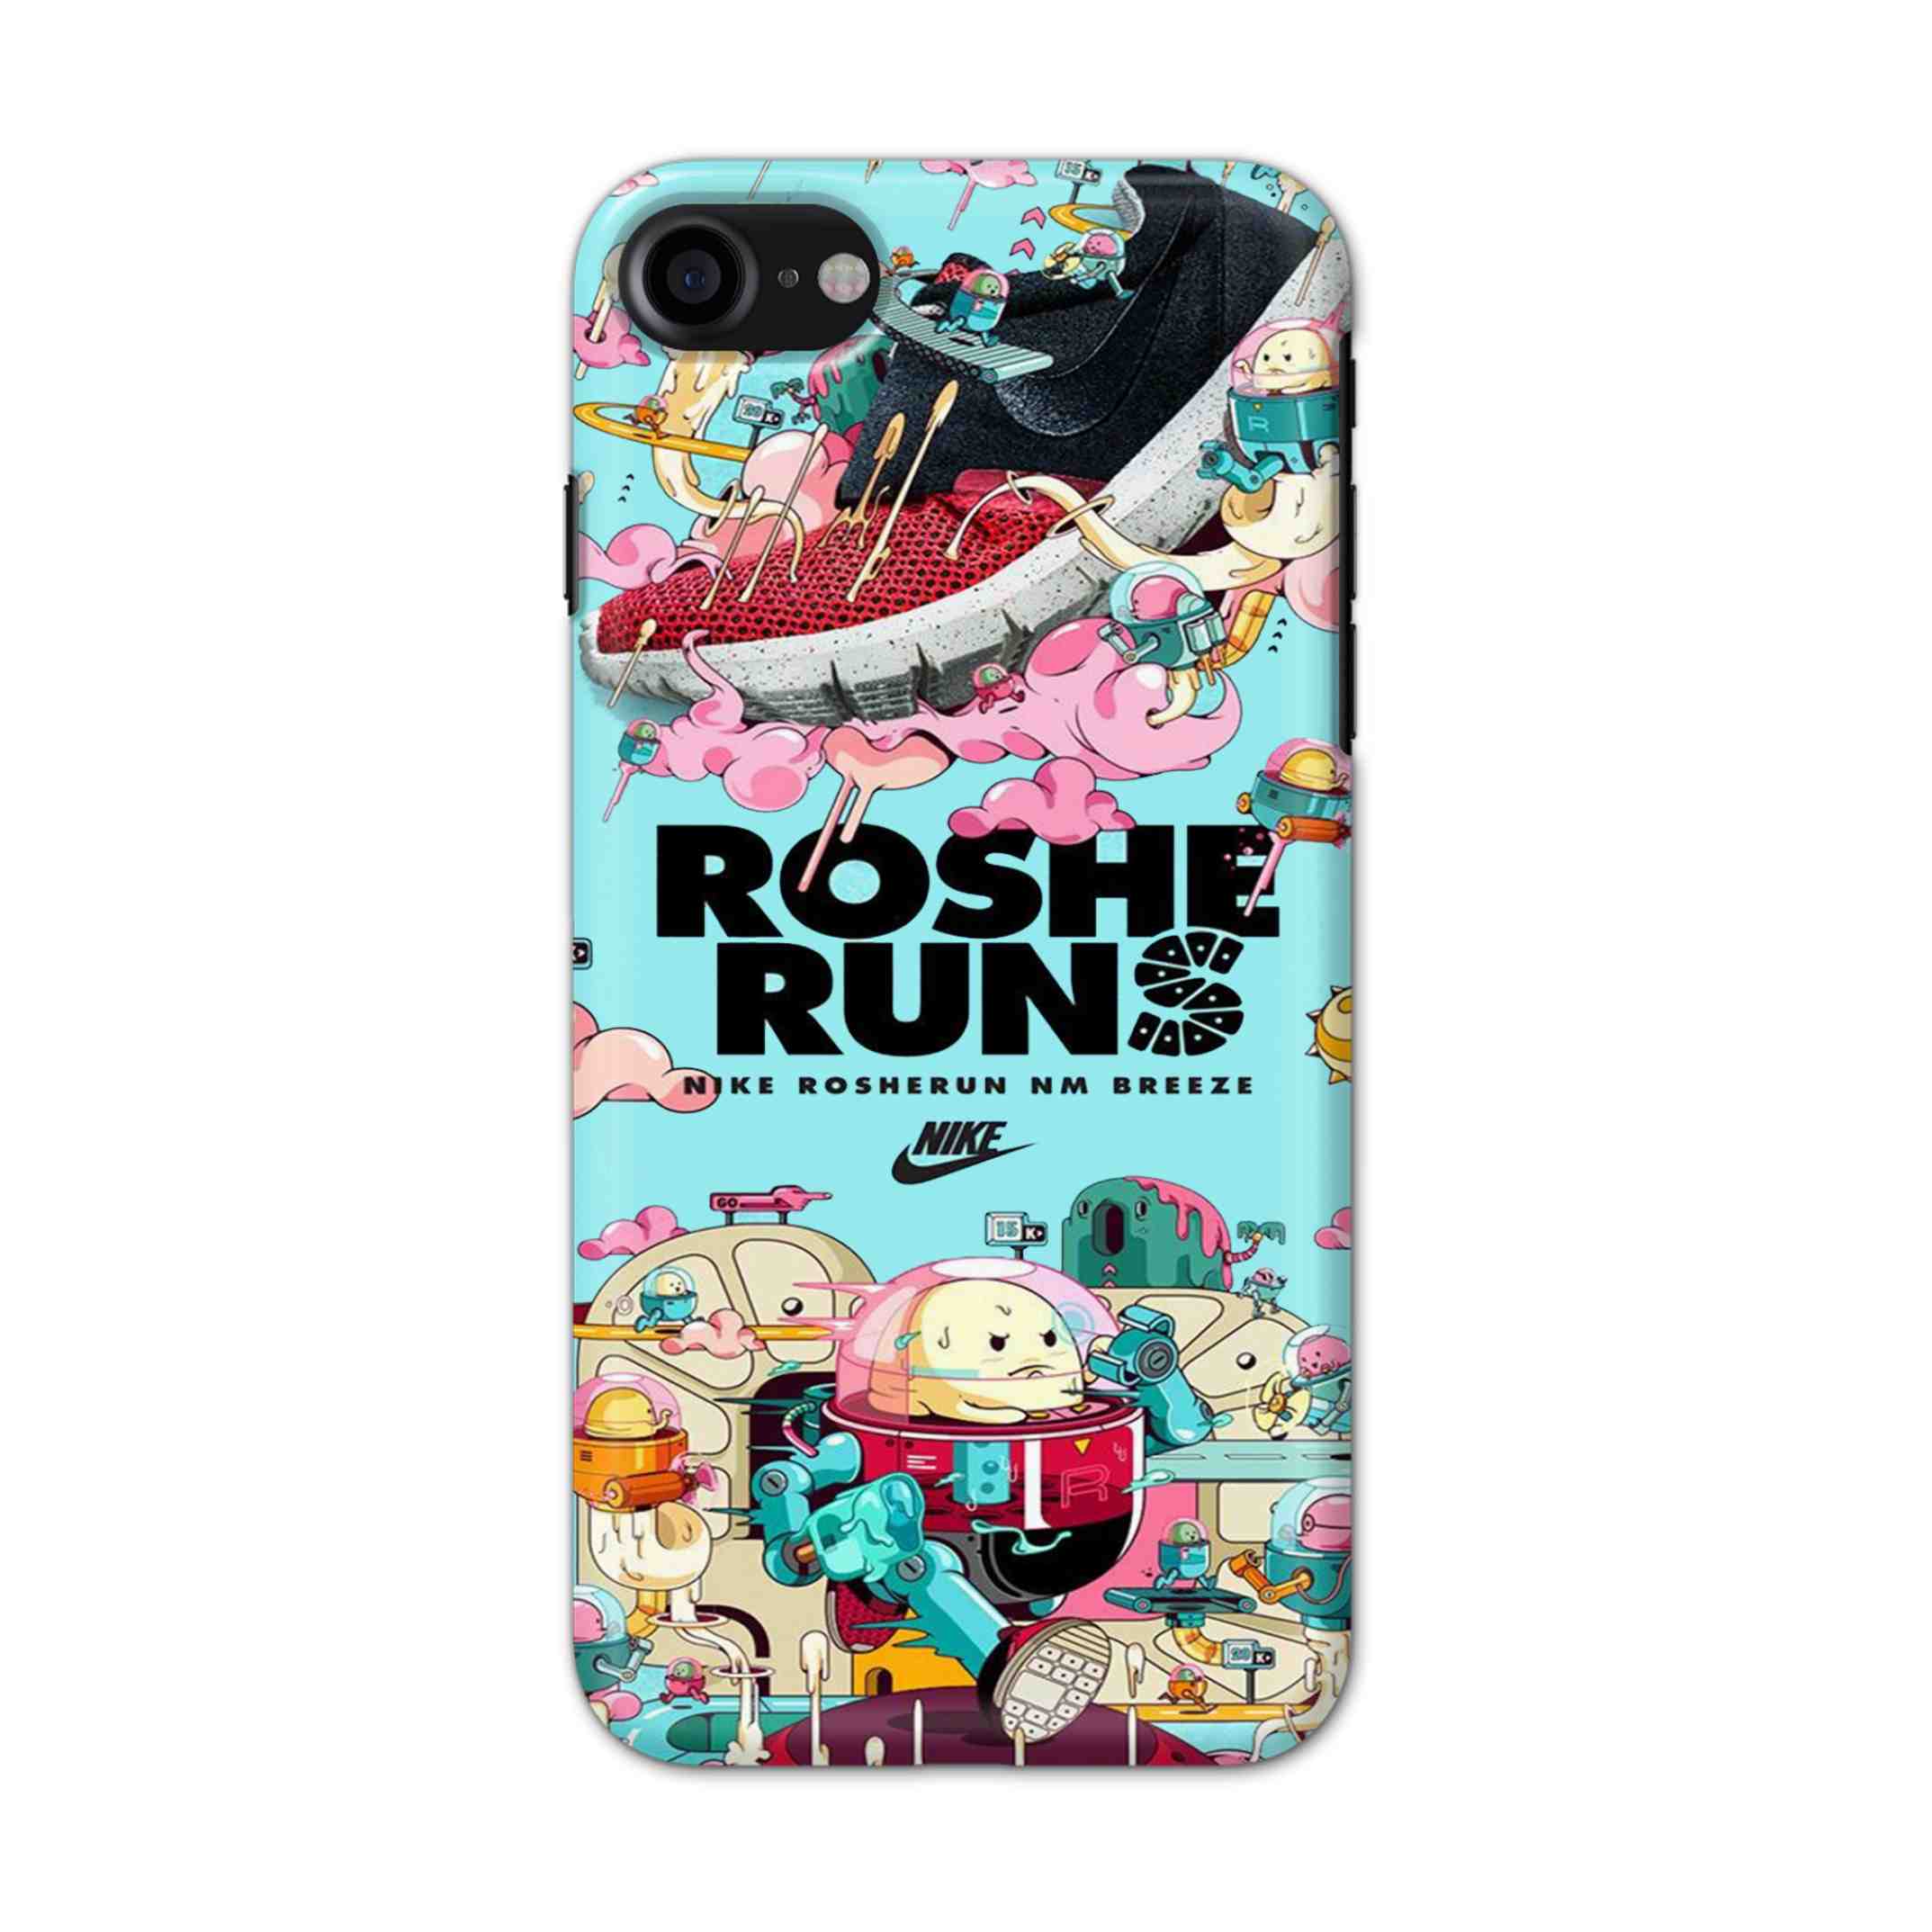 Buy Roshe Runs Hard Back Mobile Phone Case/Cover For iPhone 7 / 8 Online